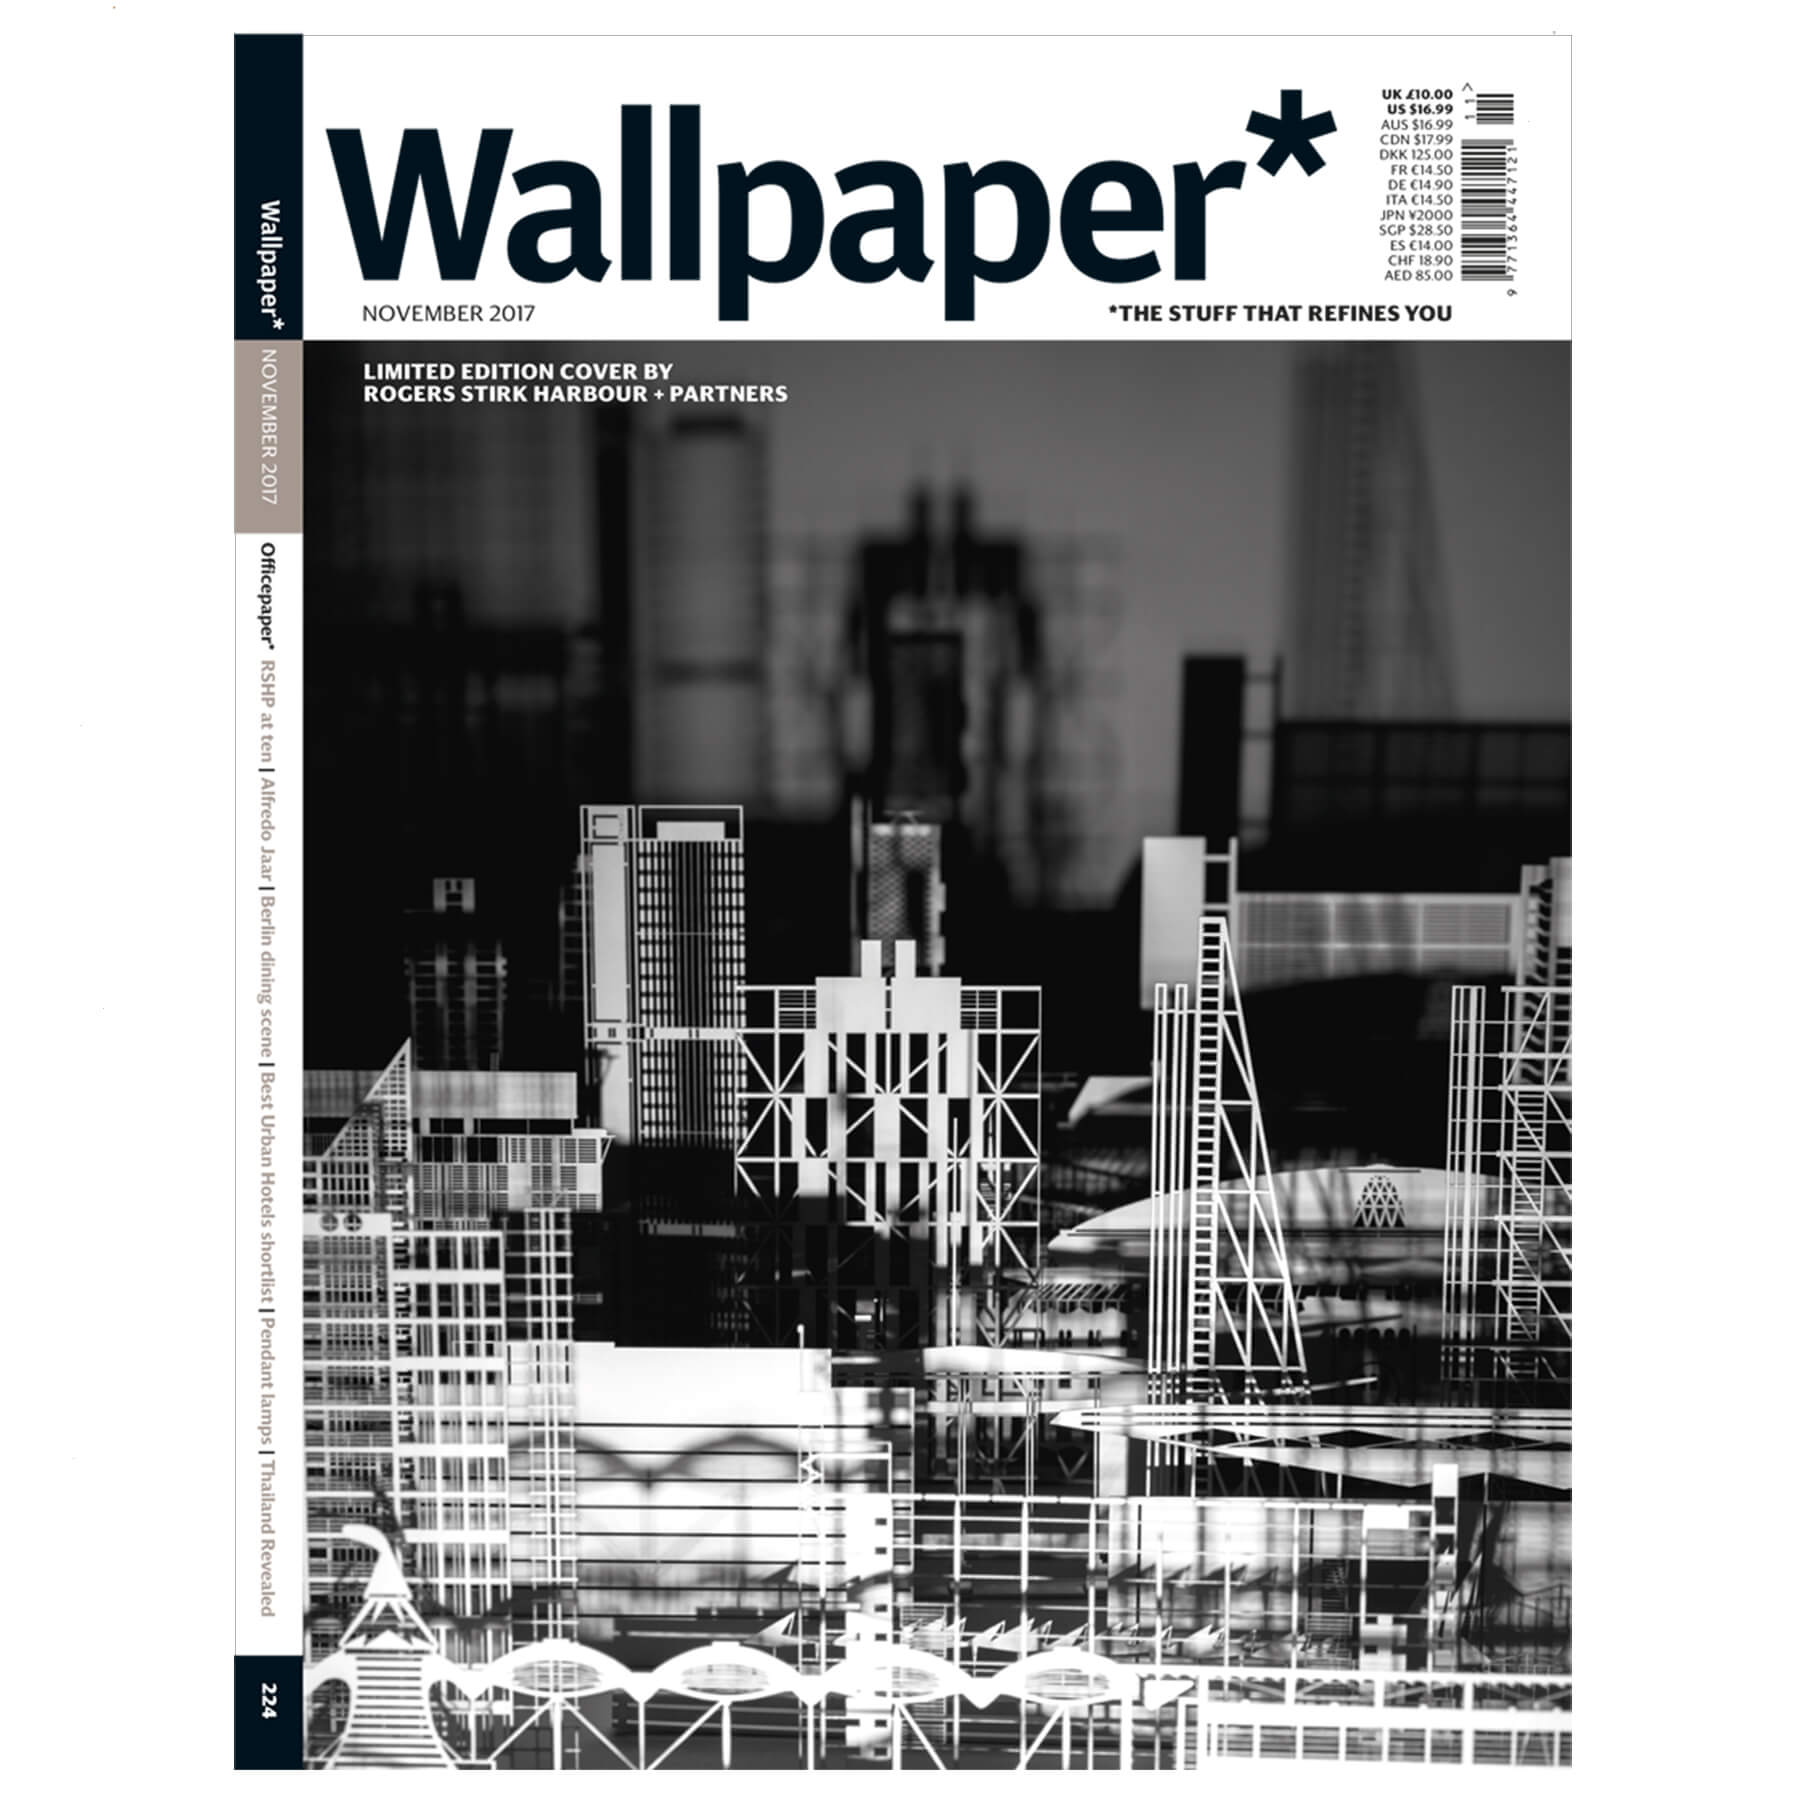 Wallpaper* Magazine November 2017